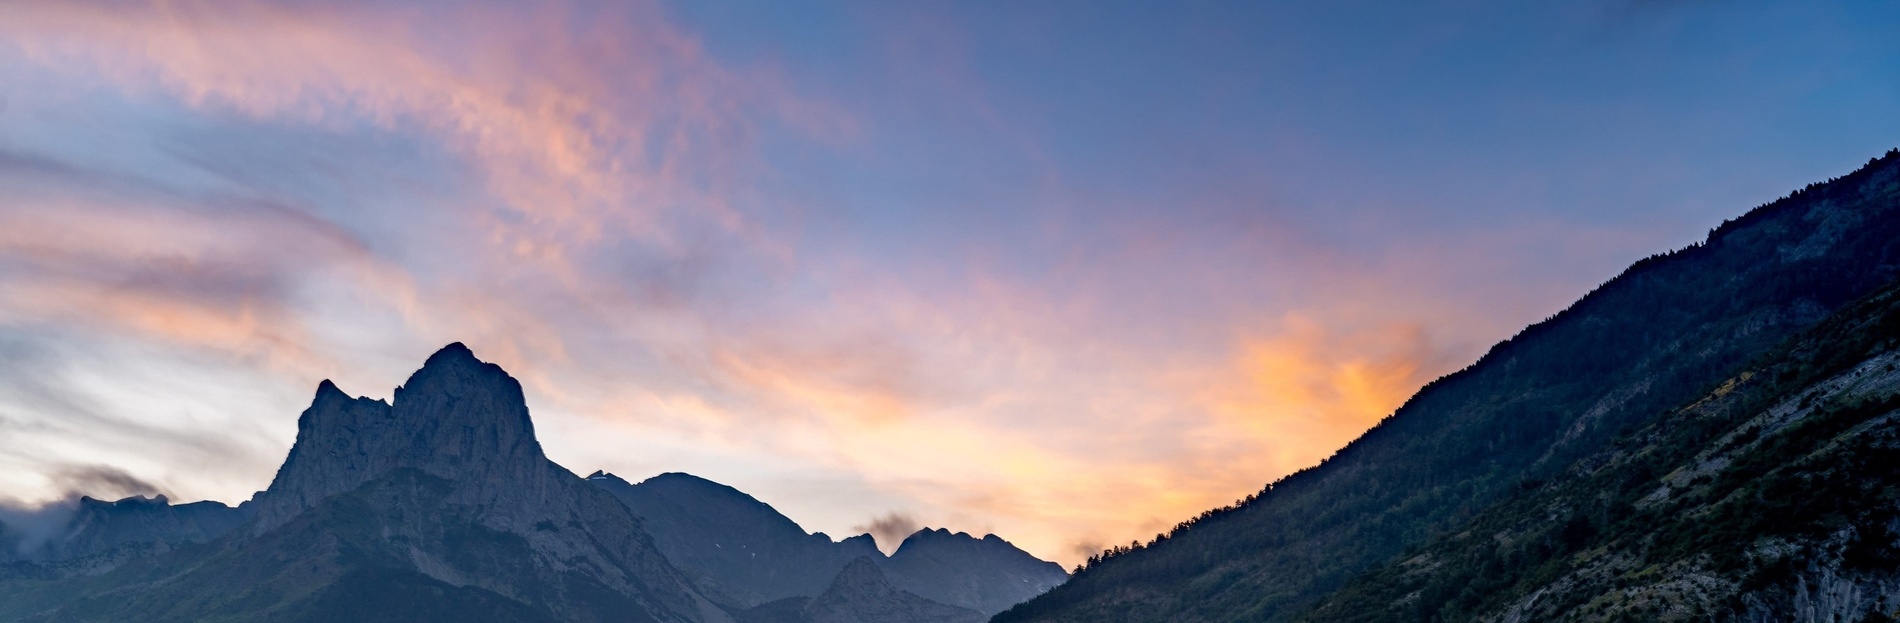 un coucher de soleil coloré sur une chaîne de montagnes